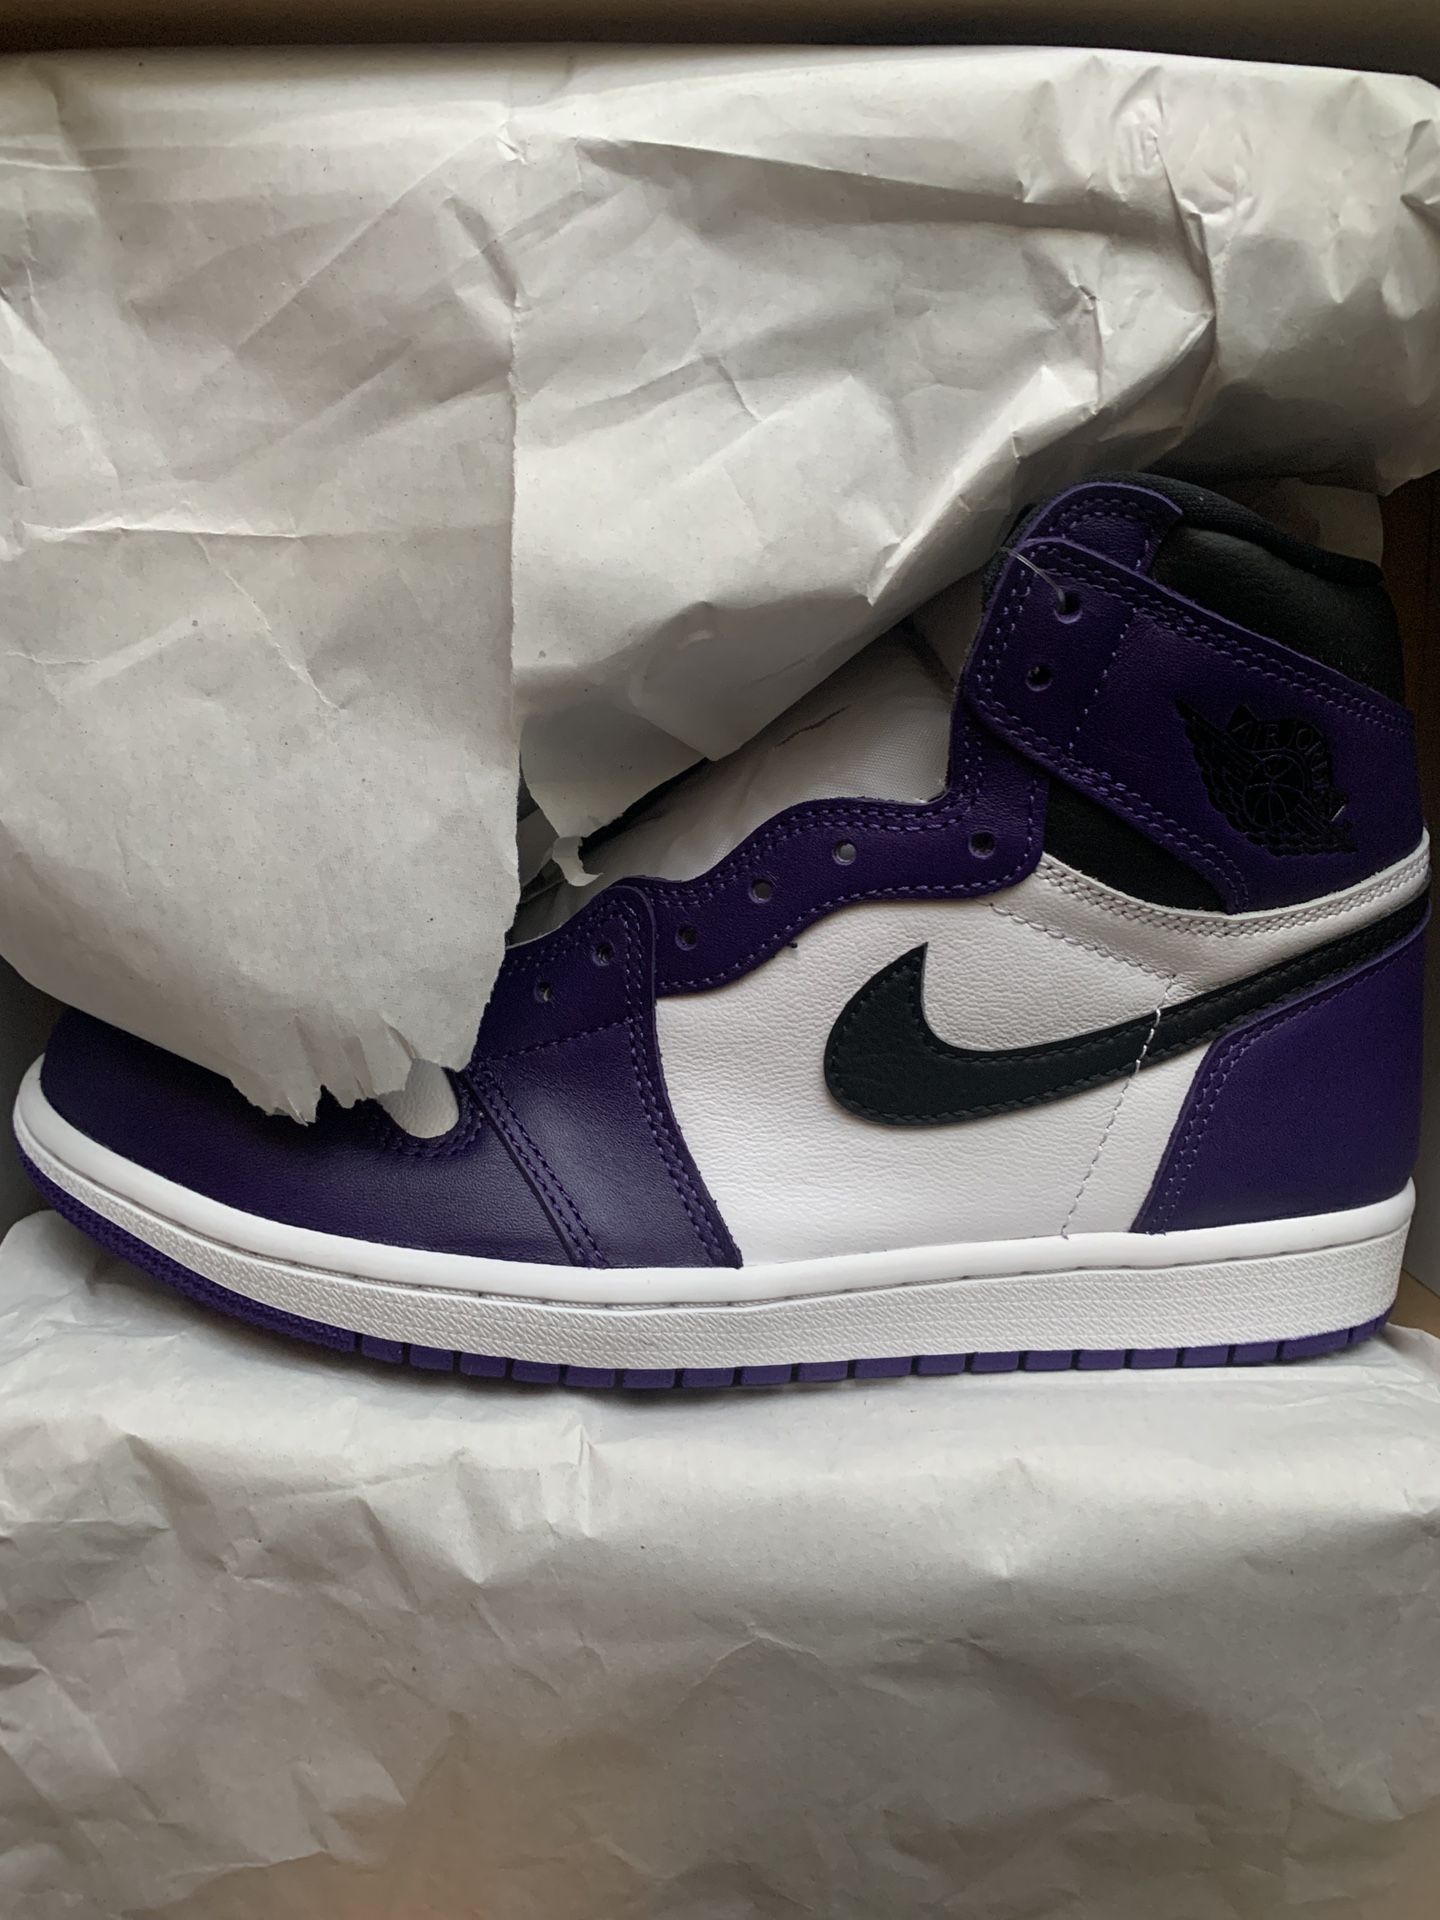 DS Court purple jordan 1’s (size 7.5 )